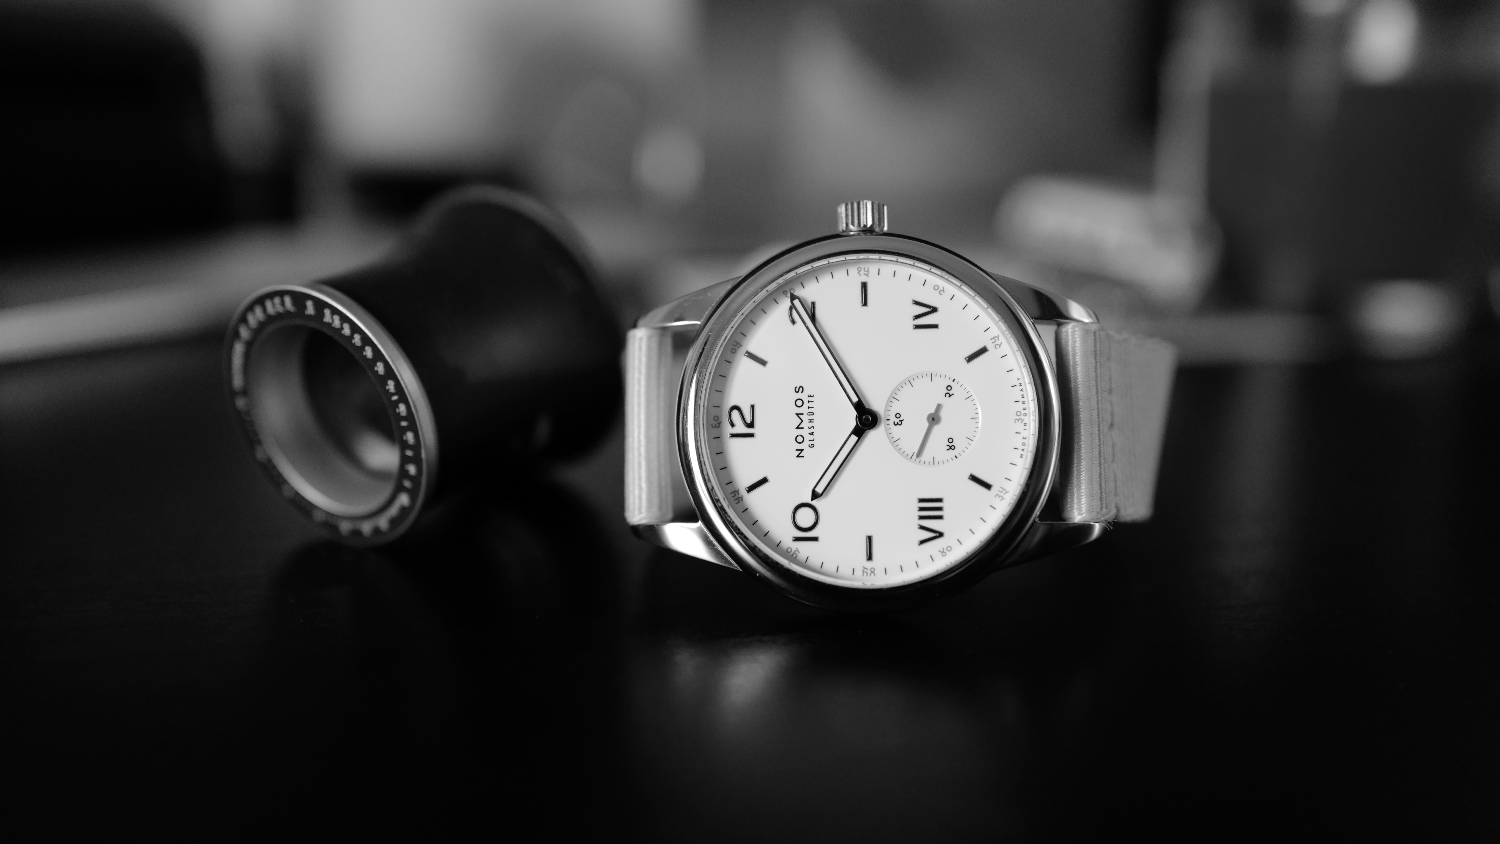 The Nomos J9 watch